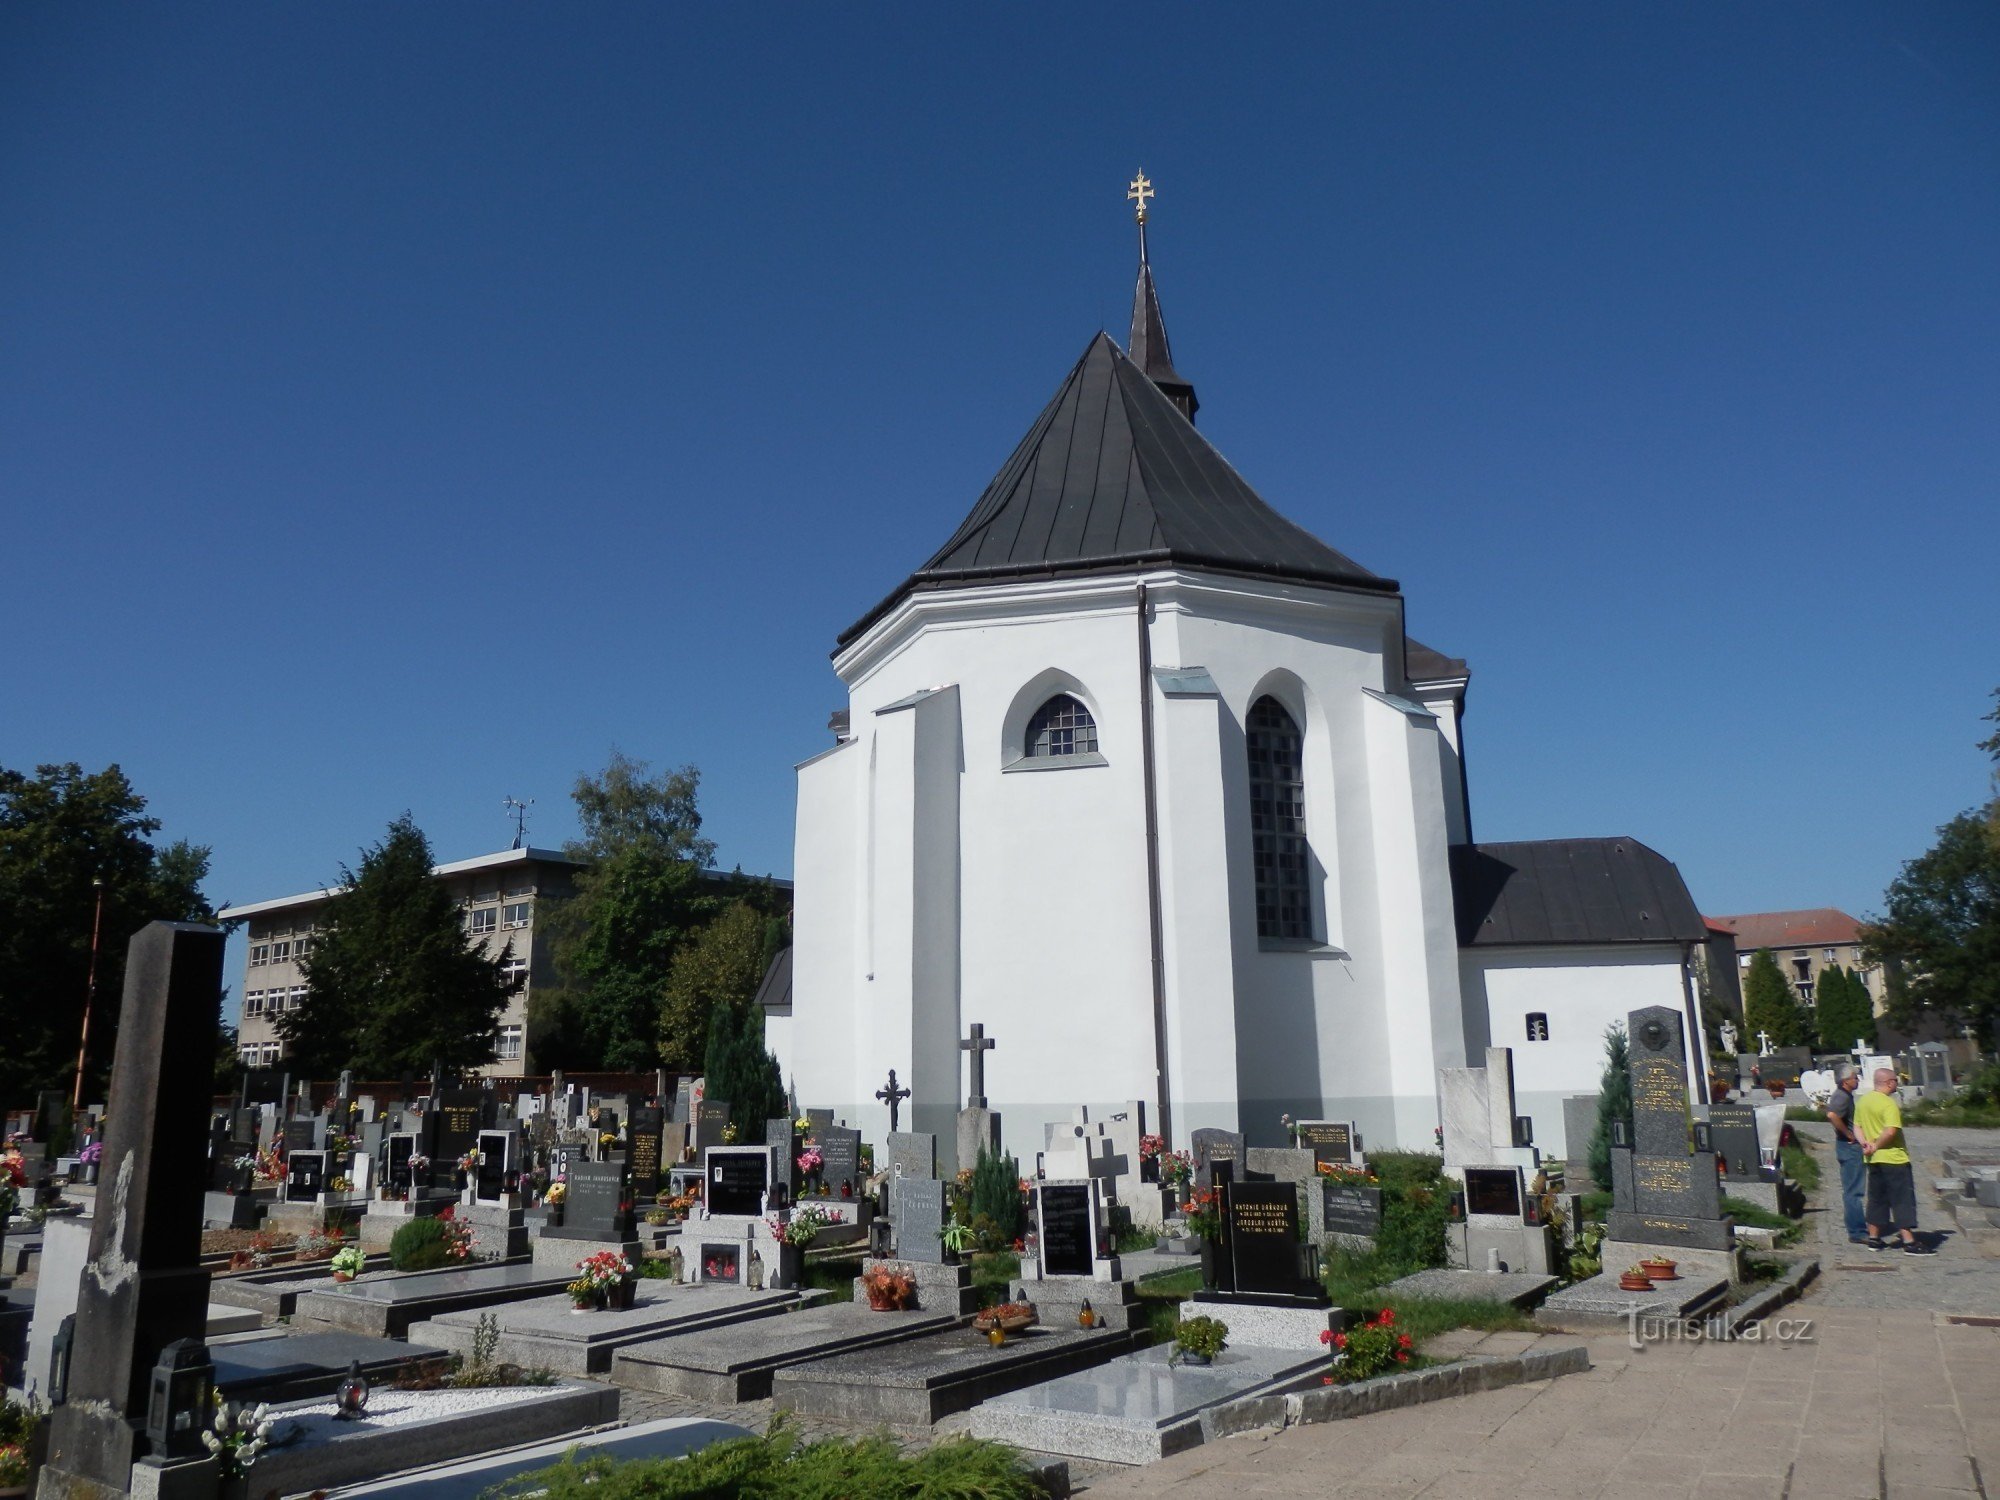 Церква Святої Трійці в Бистрице над Пернштейном